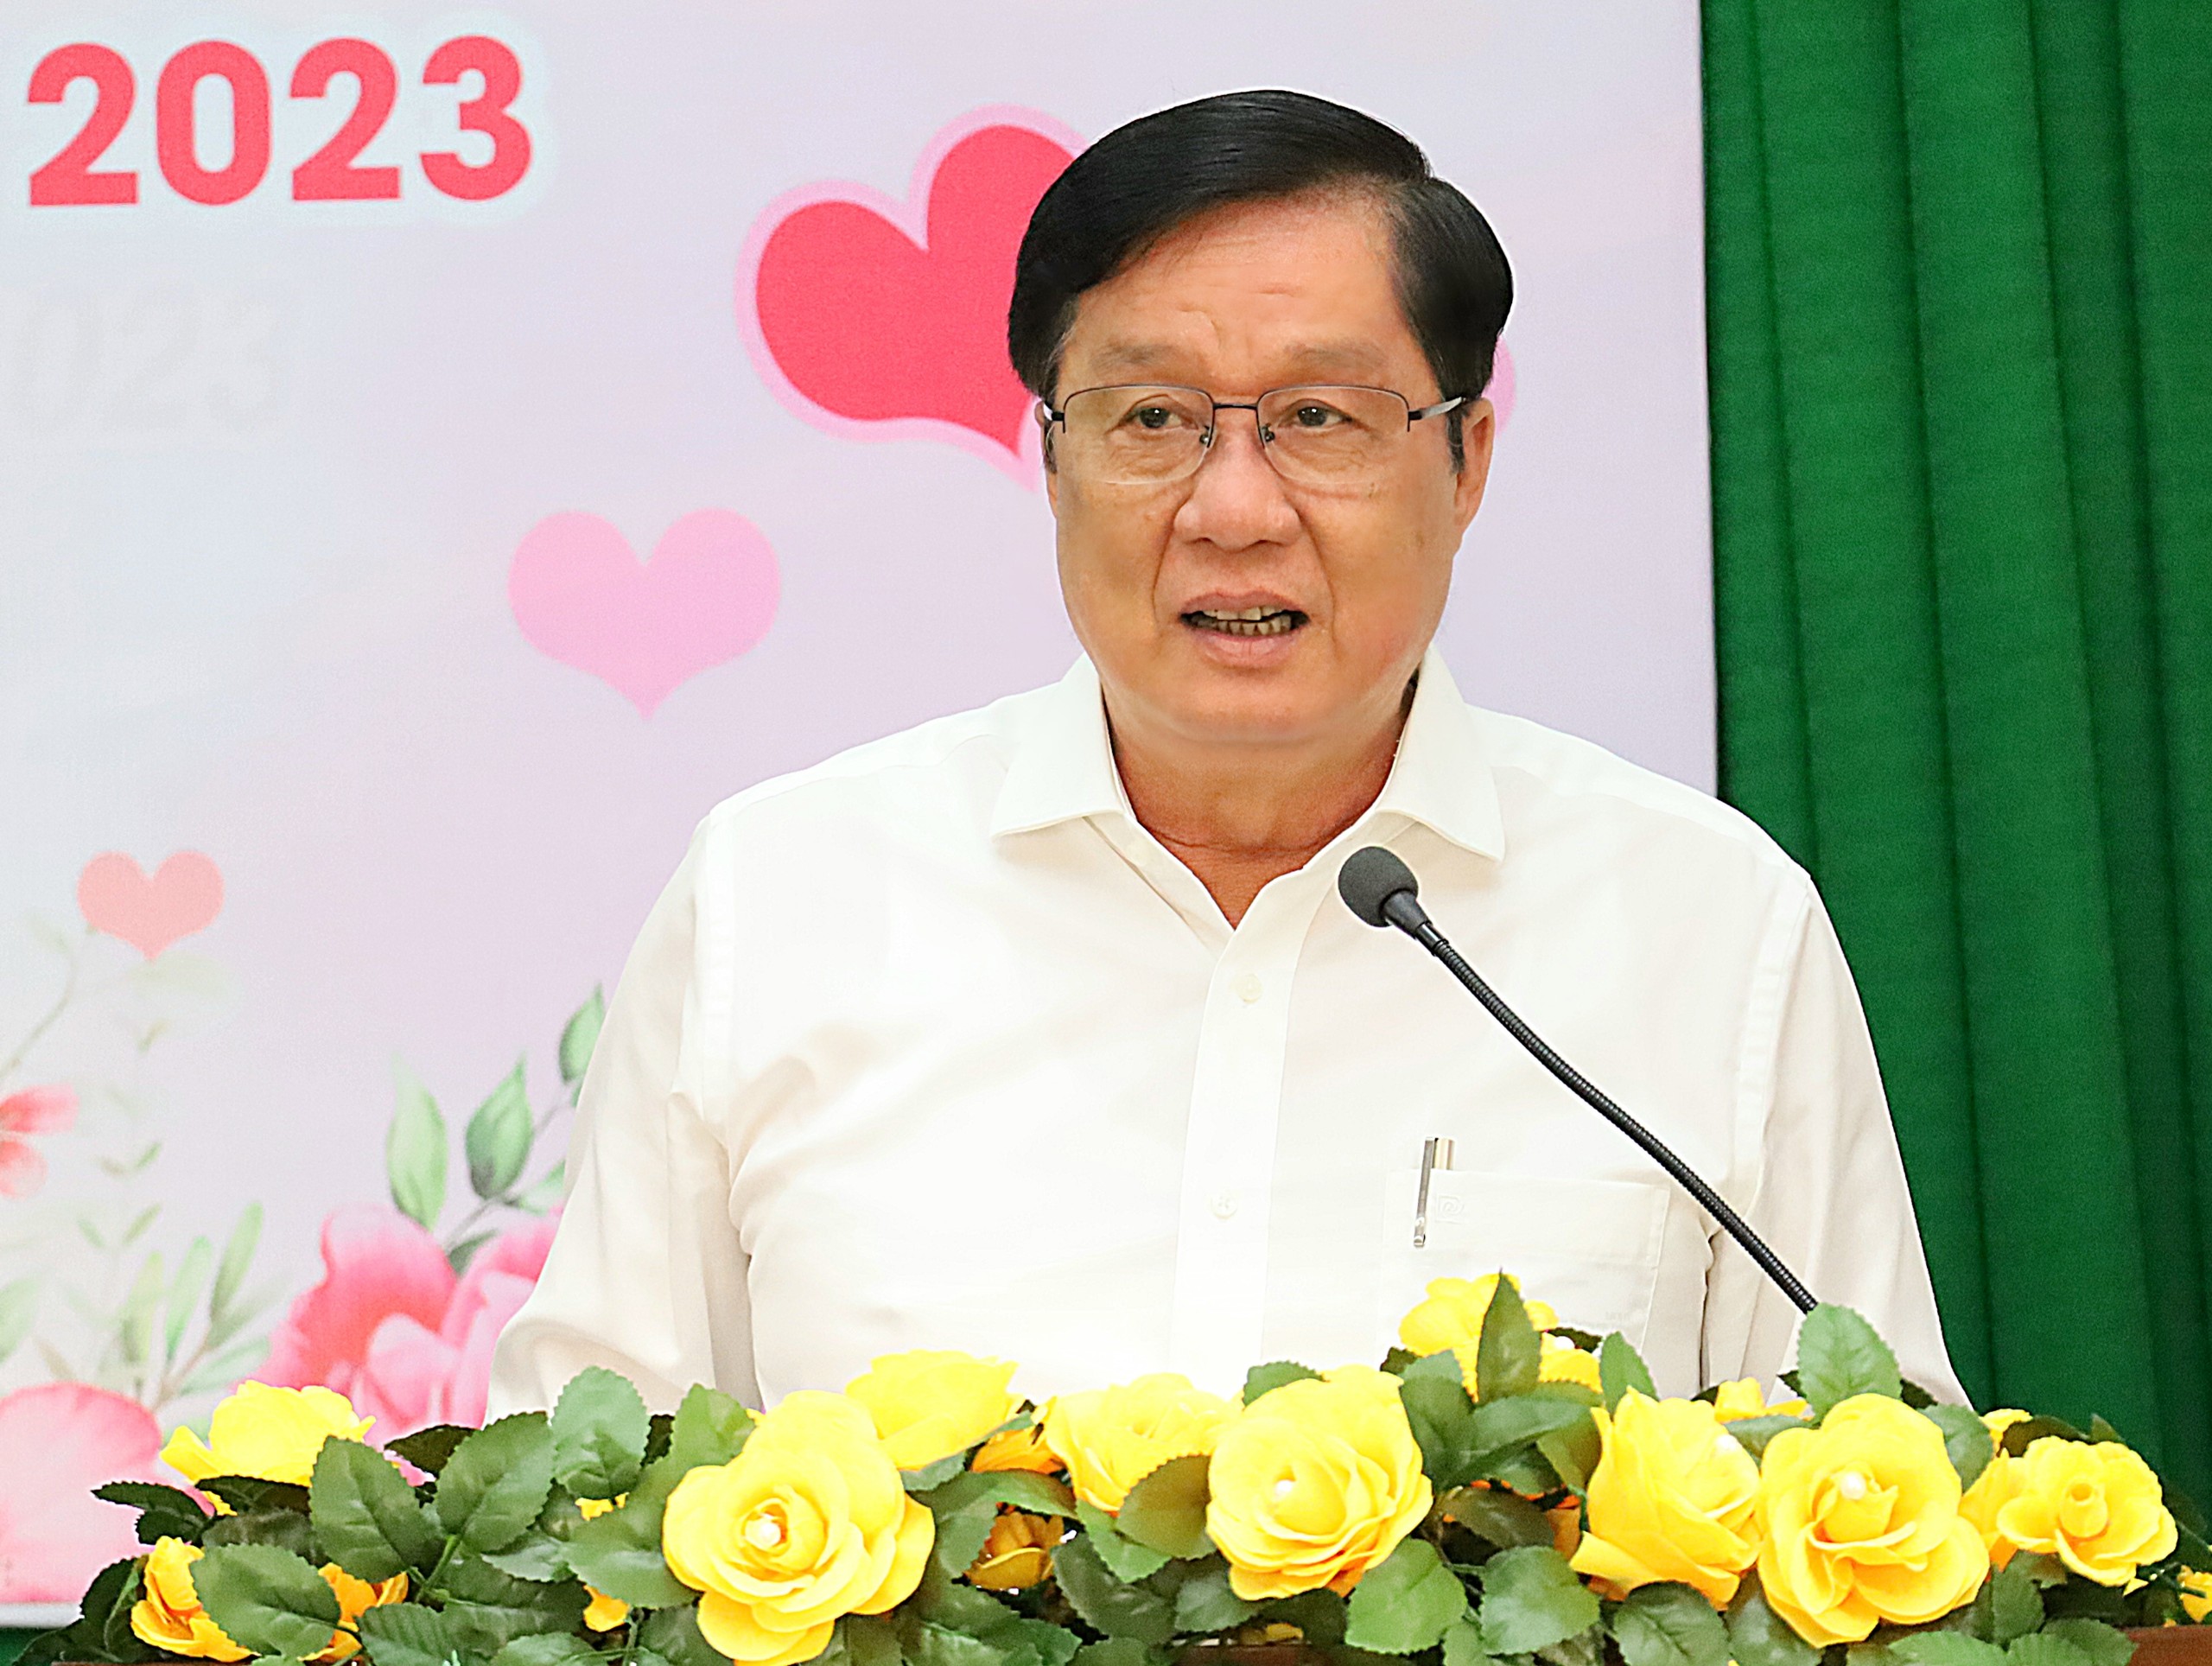 Ông Phạm Văn Hiểu - Phó Bí thư thường trực Thành ủy, Chủ tịch HĐND TP. Cần Thơ phát biểu chỉ đạo tại buổi họp mặt.